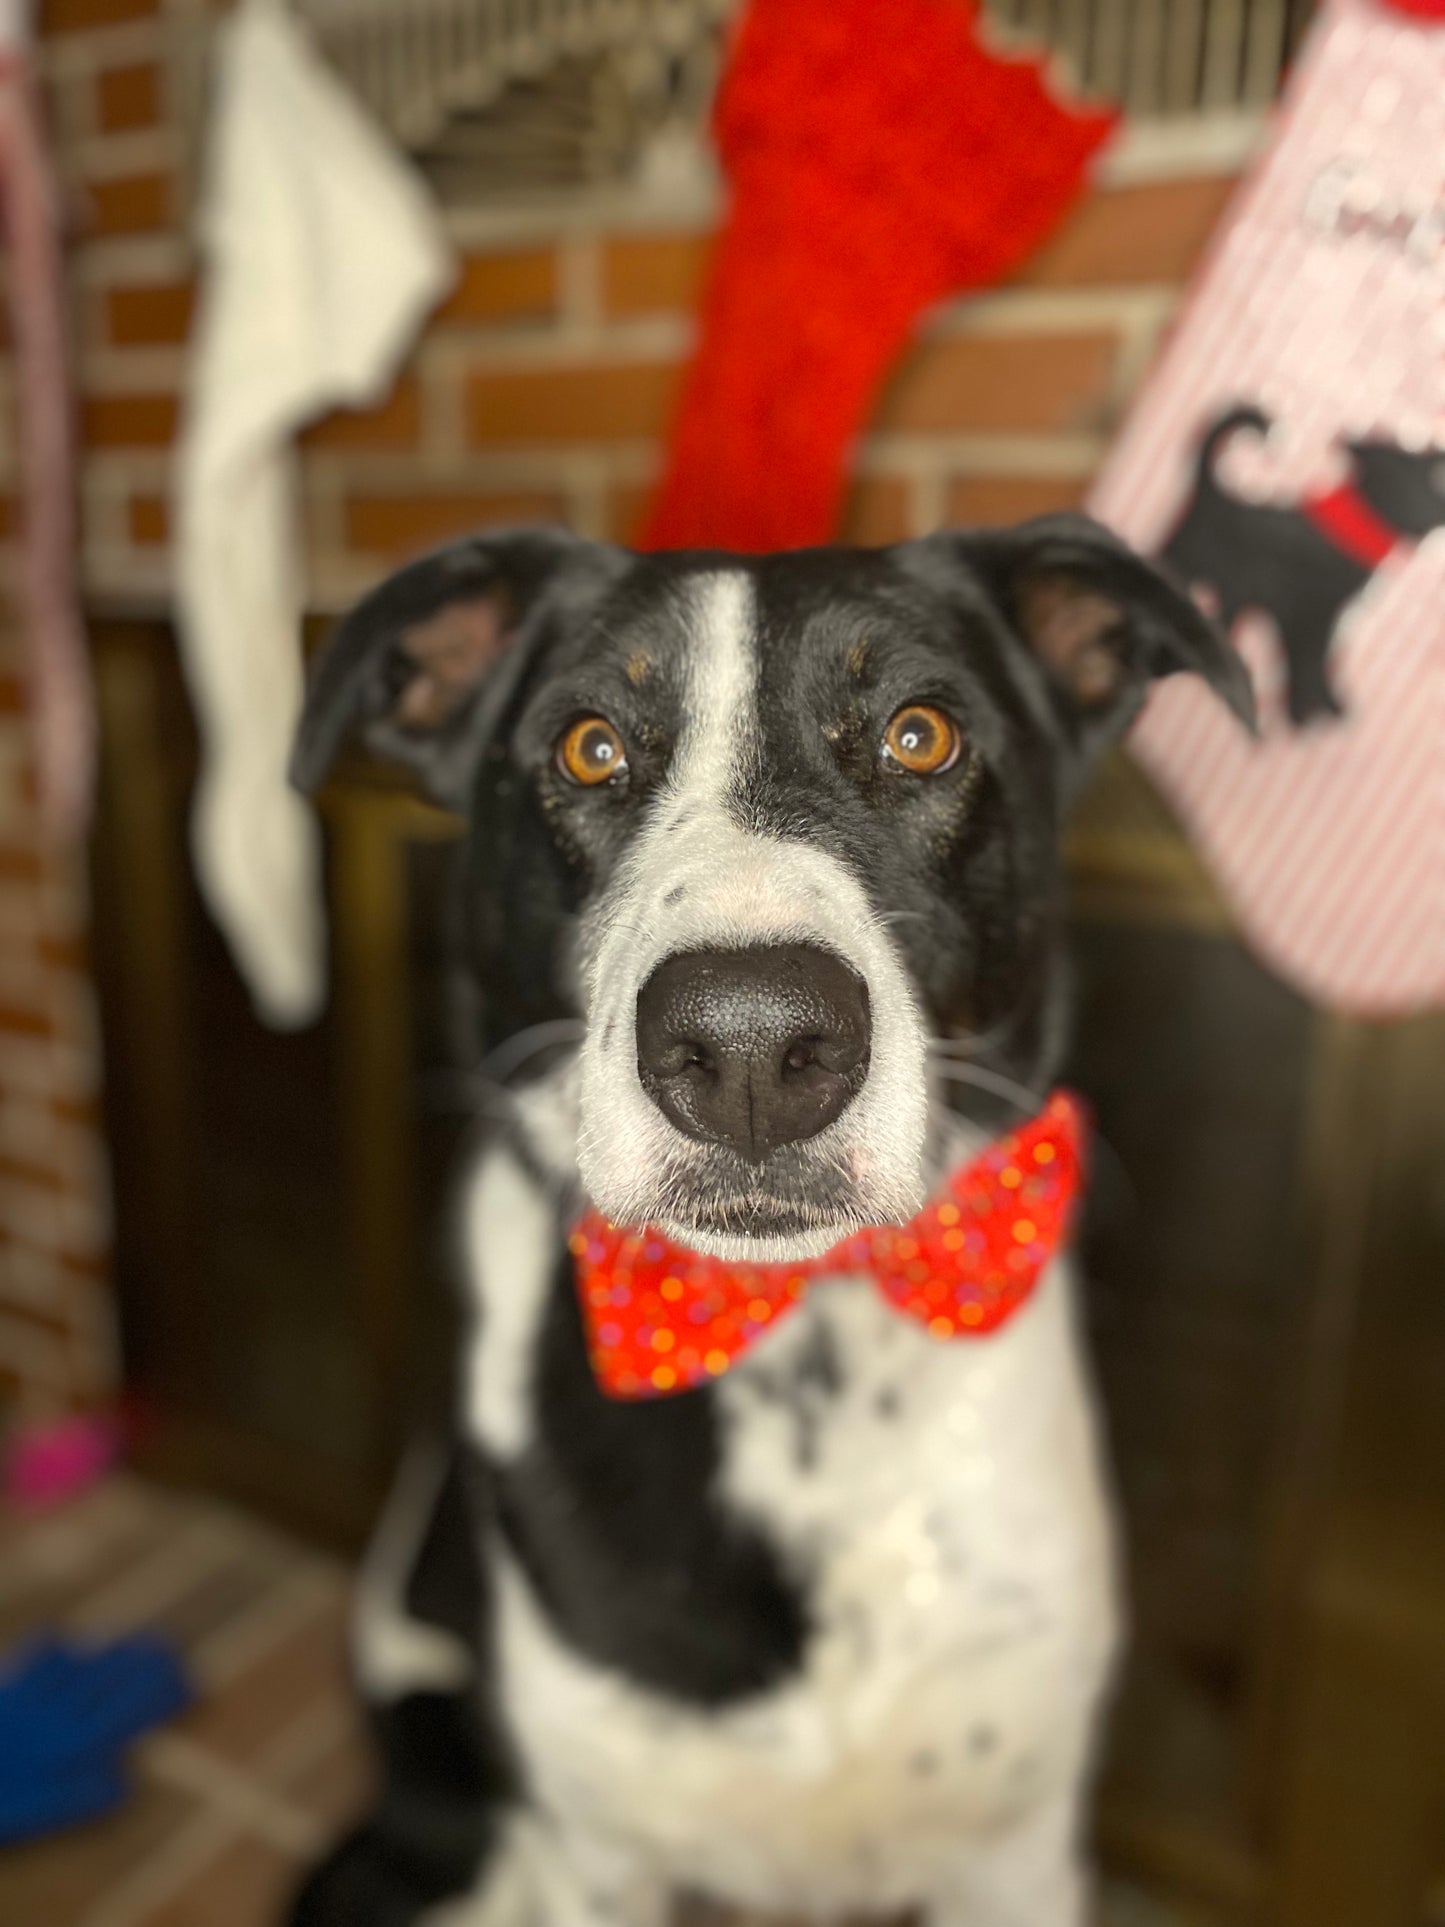 Dog Bow Tie, Christmas Lights